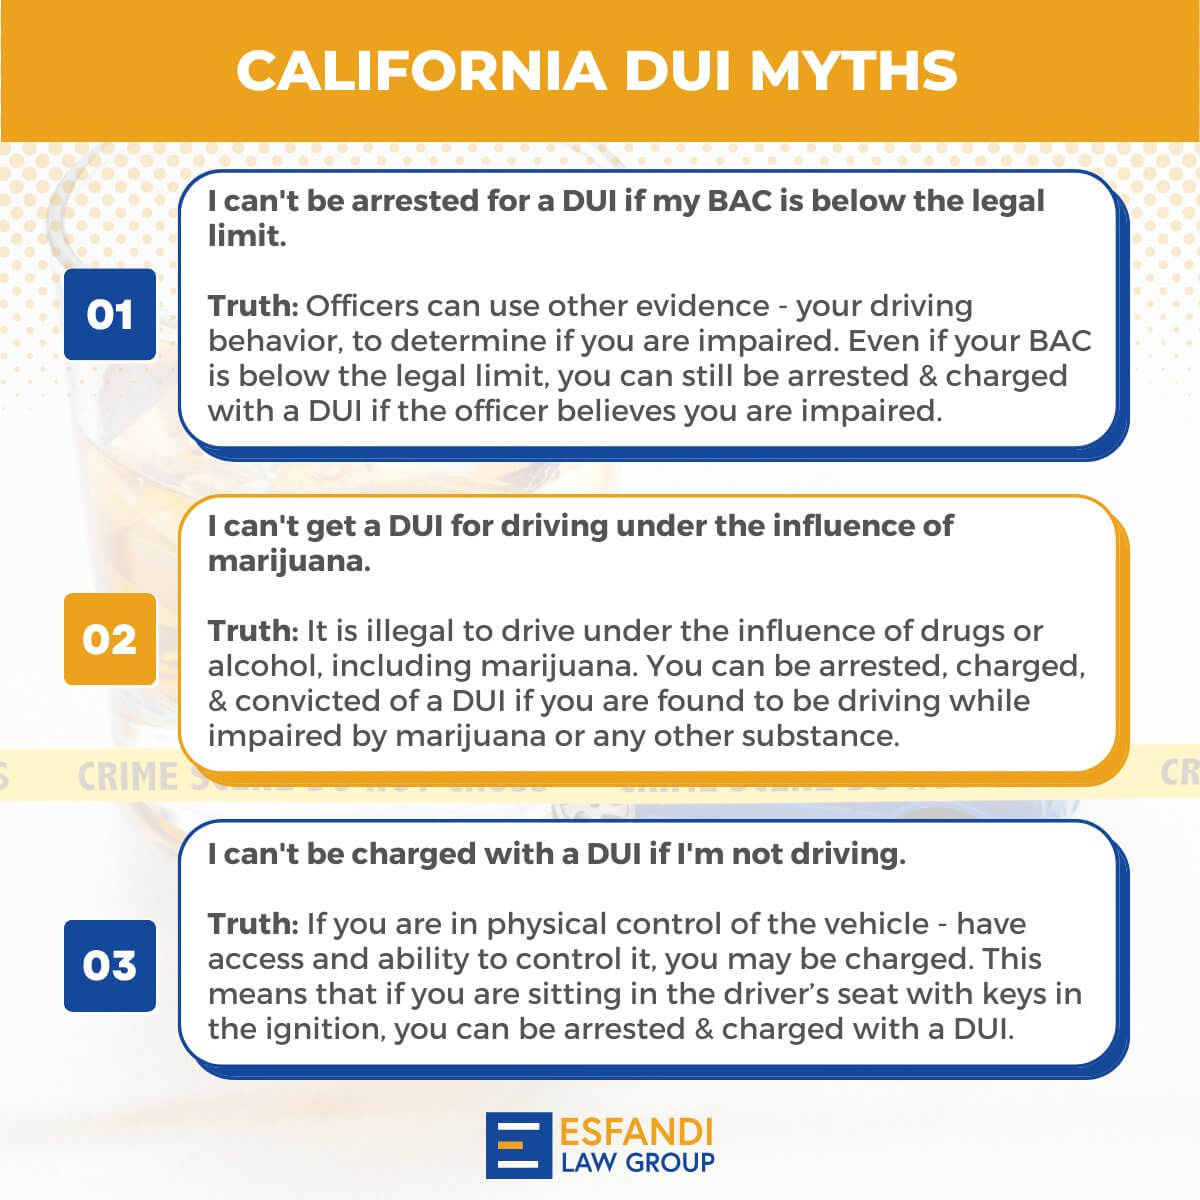 Common DUI Myths